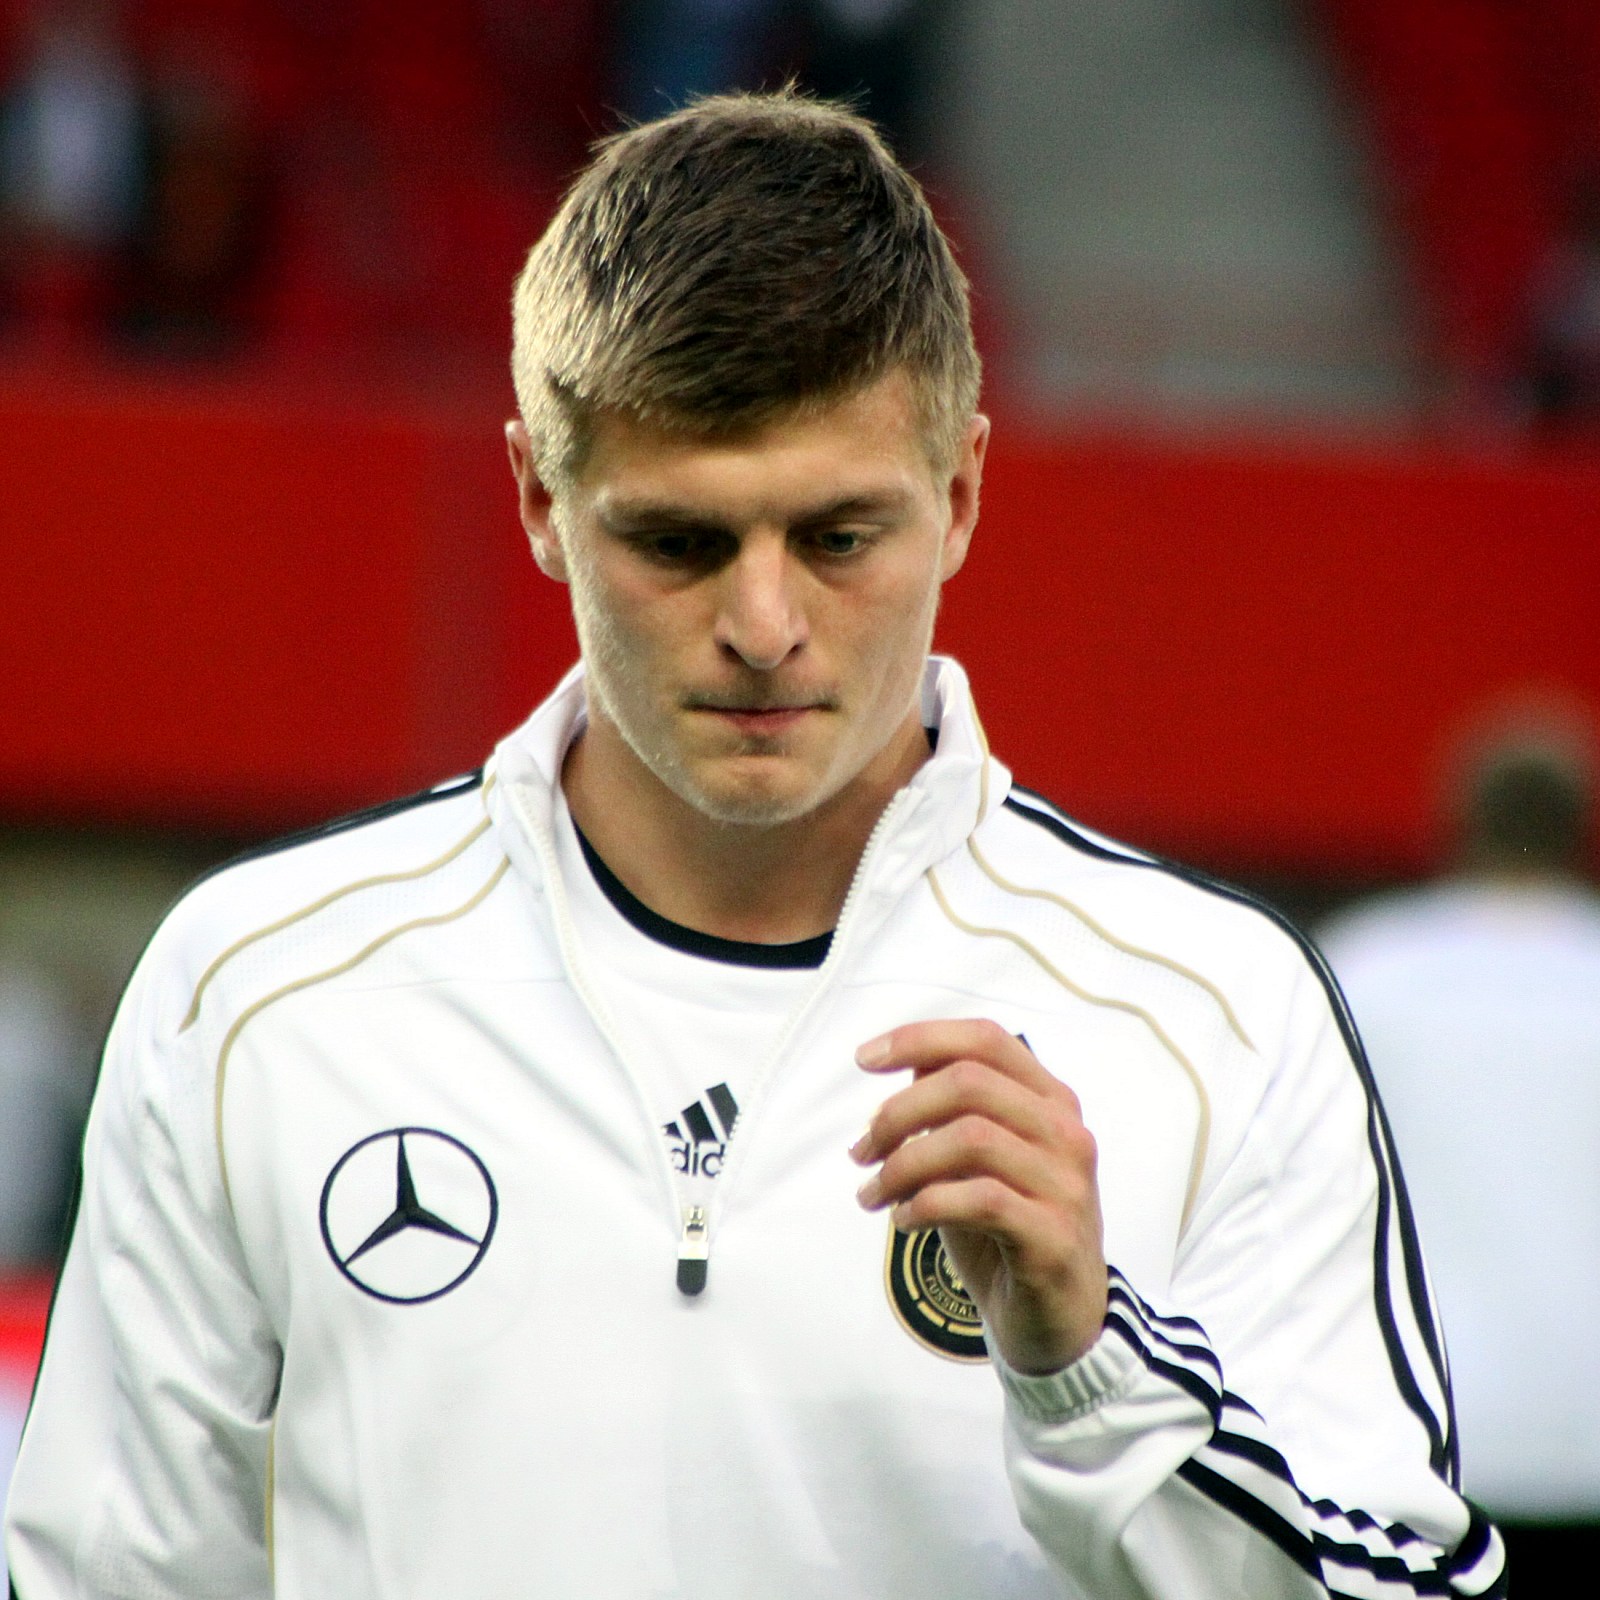 Quả bom Toni Kroos vừa nổ khiến nội bộ Bayern rối loạn và thiệt hại thêm 1 nhân sự